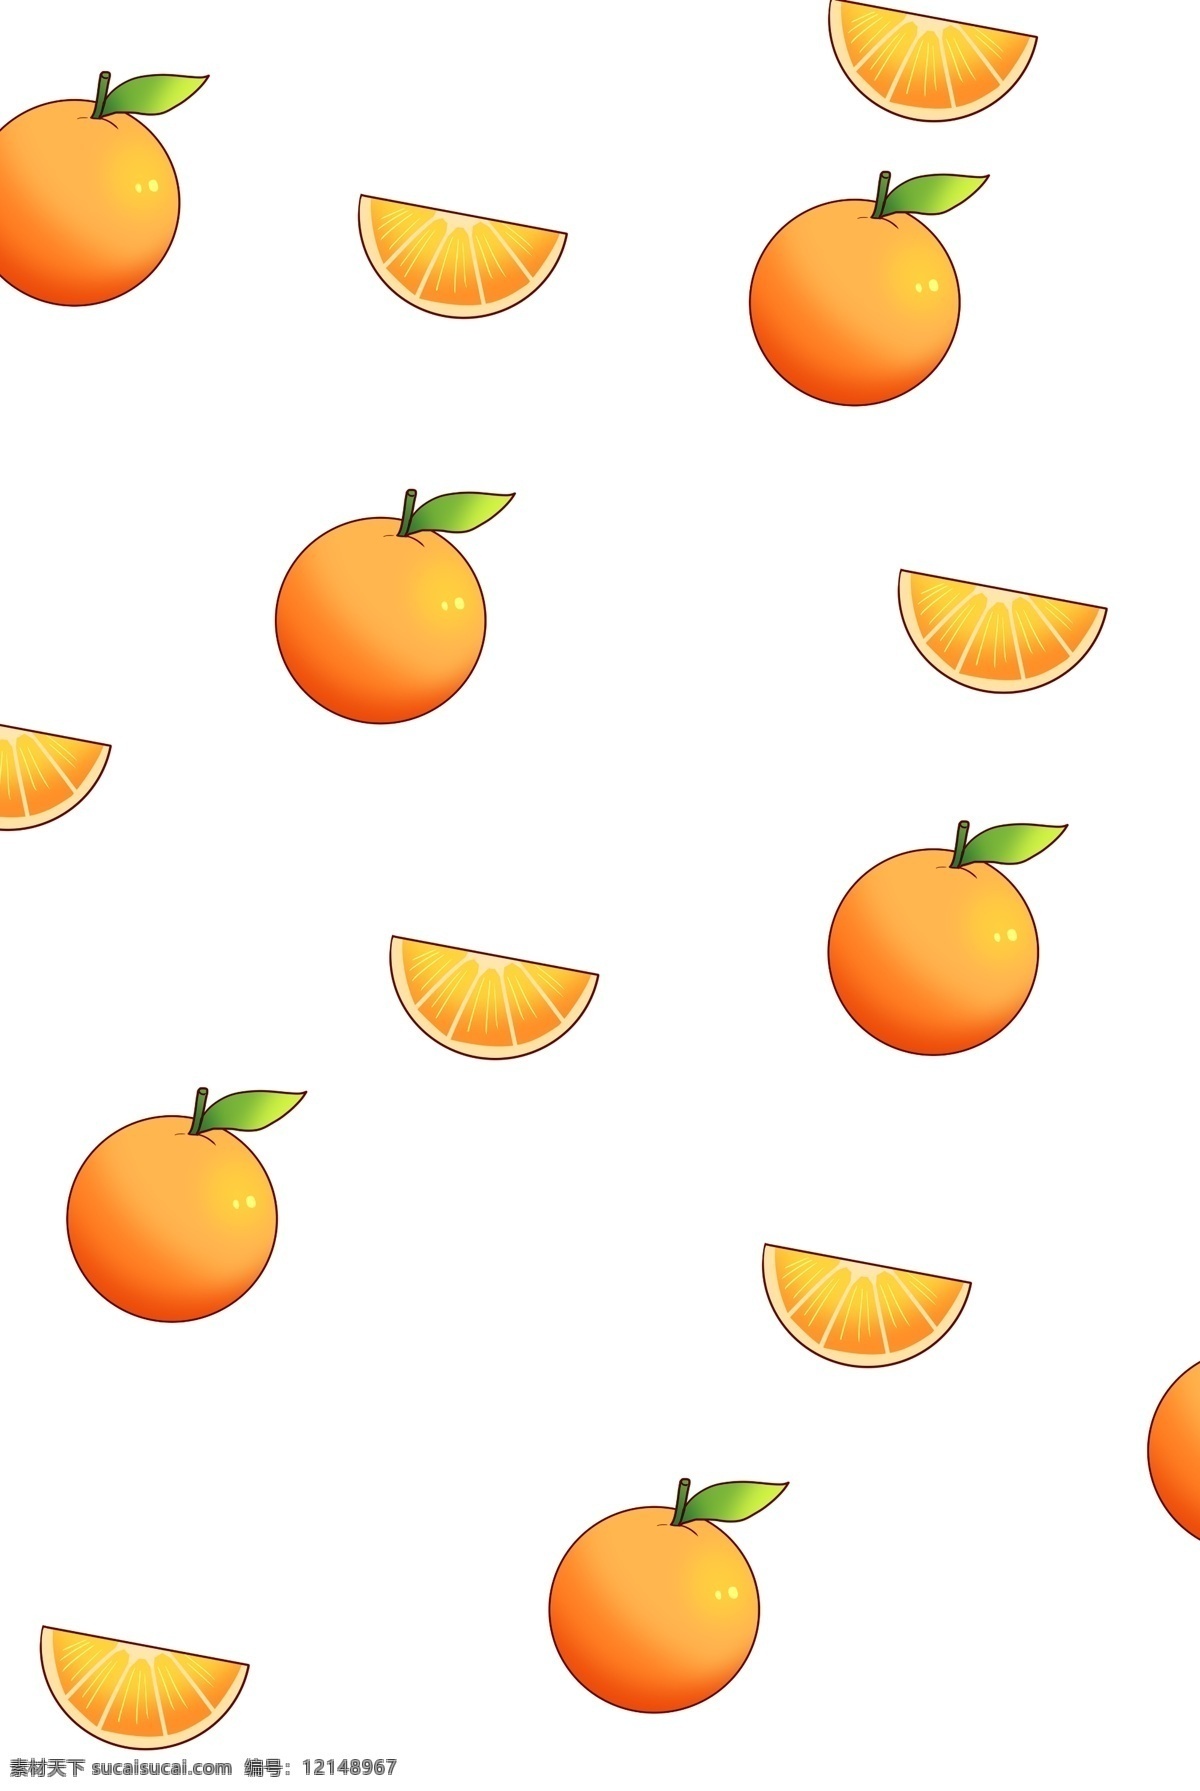 黄色 橙子 底纹 插画 手绘橙子底纹 卡通橙子底纹 食物底纹 水果底纹 底纹装饰